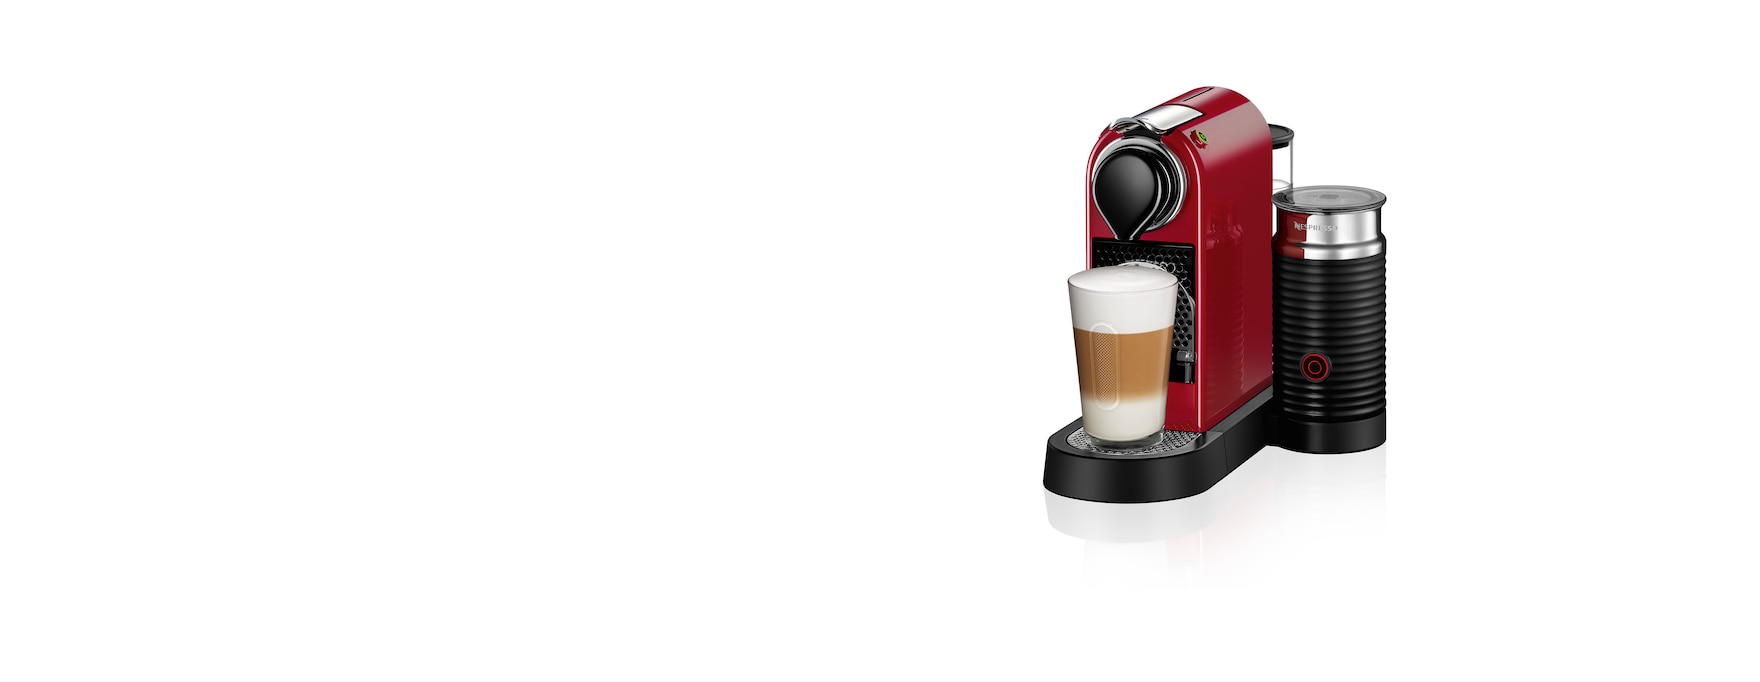 Miniature lineup Encyclopedia Original Espresso Machines & Buying Guide | Nespresso USA